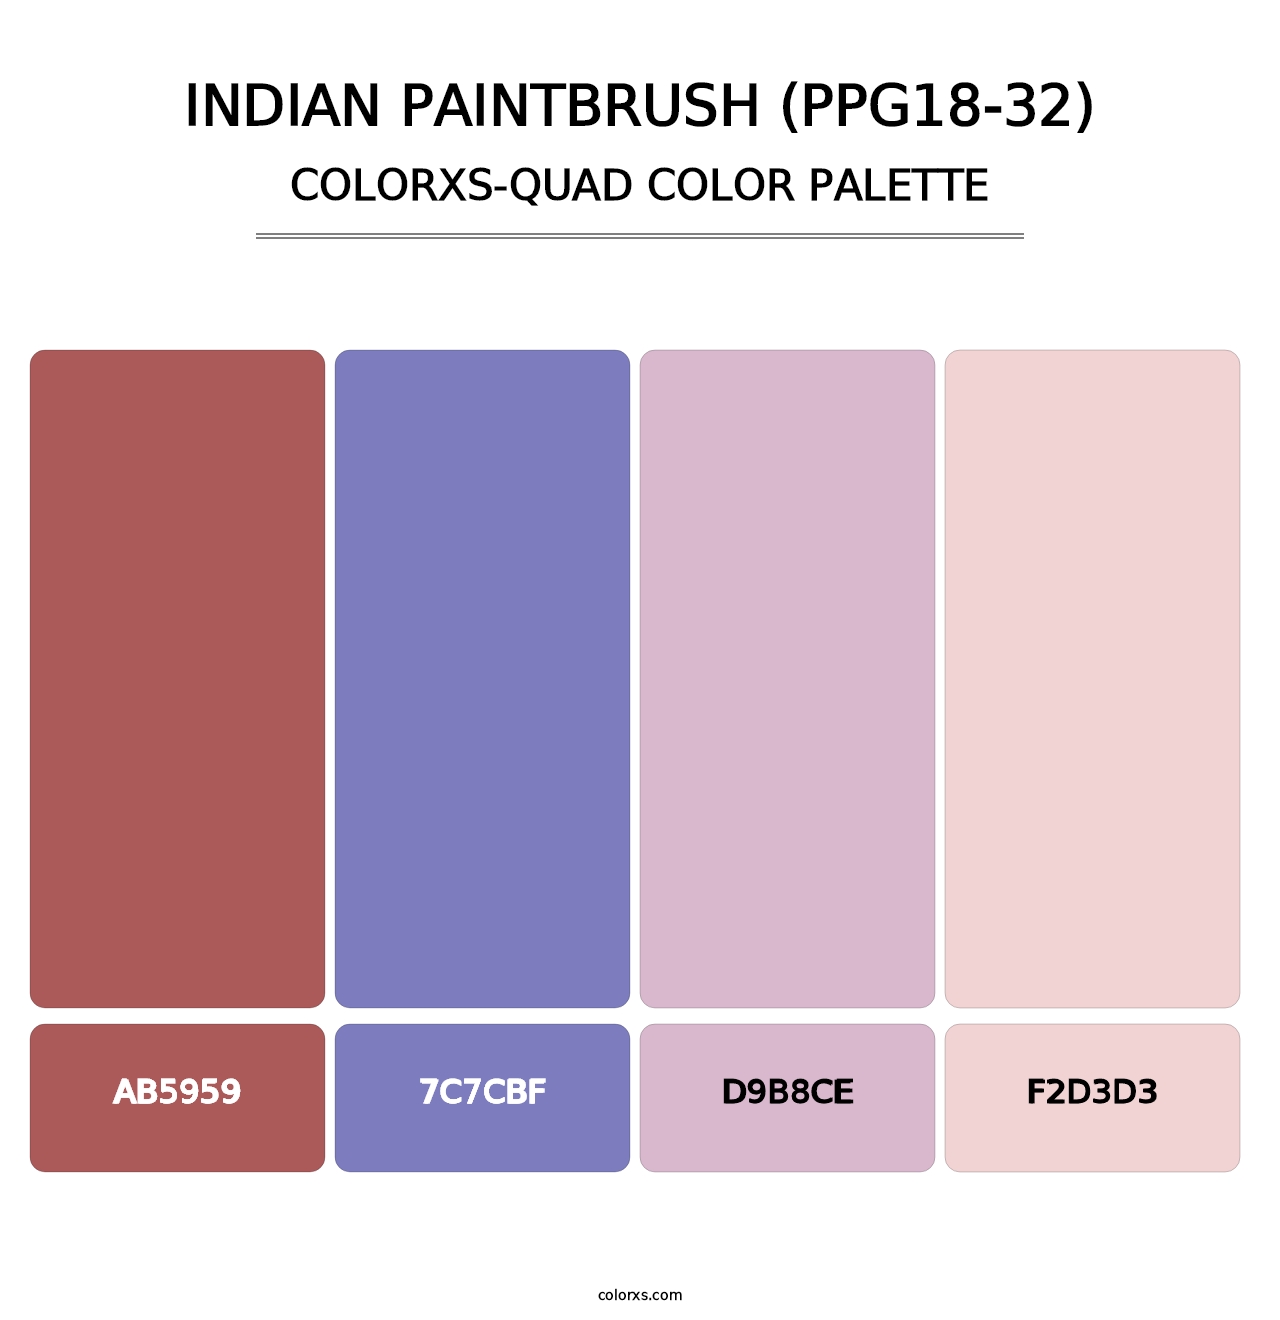 Indian Paintbrush (PPG18-32) - Colorxs Quad Palette